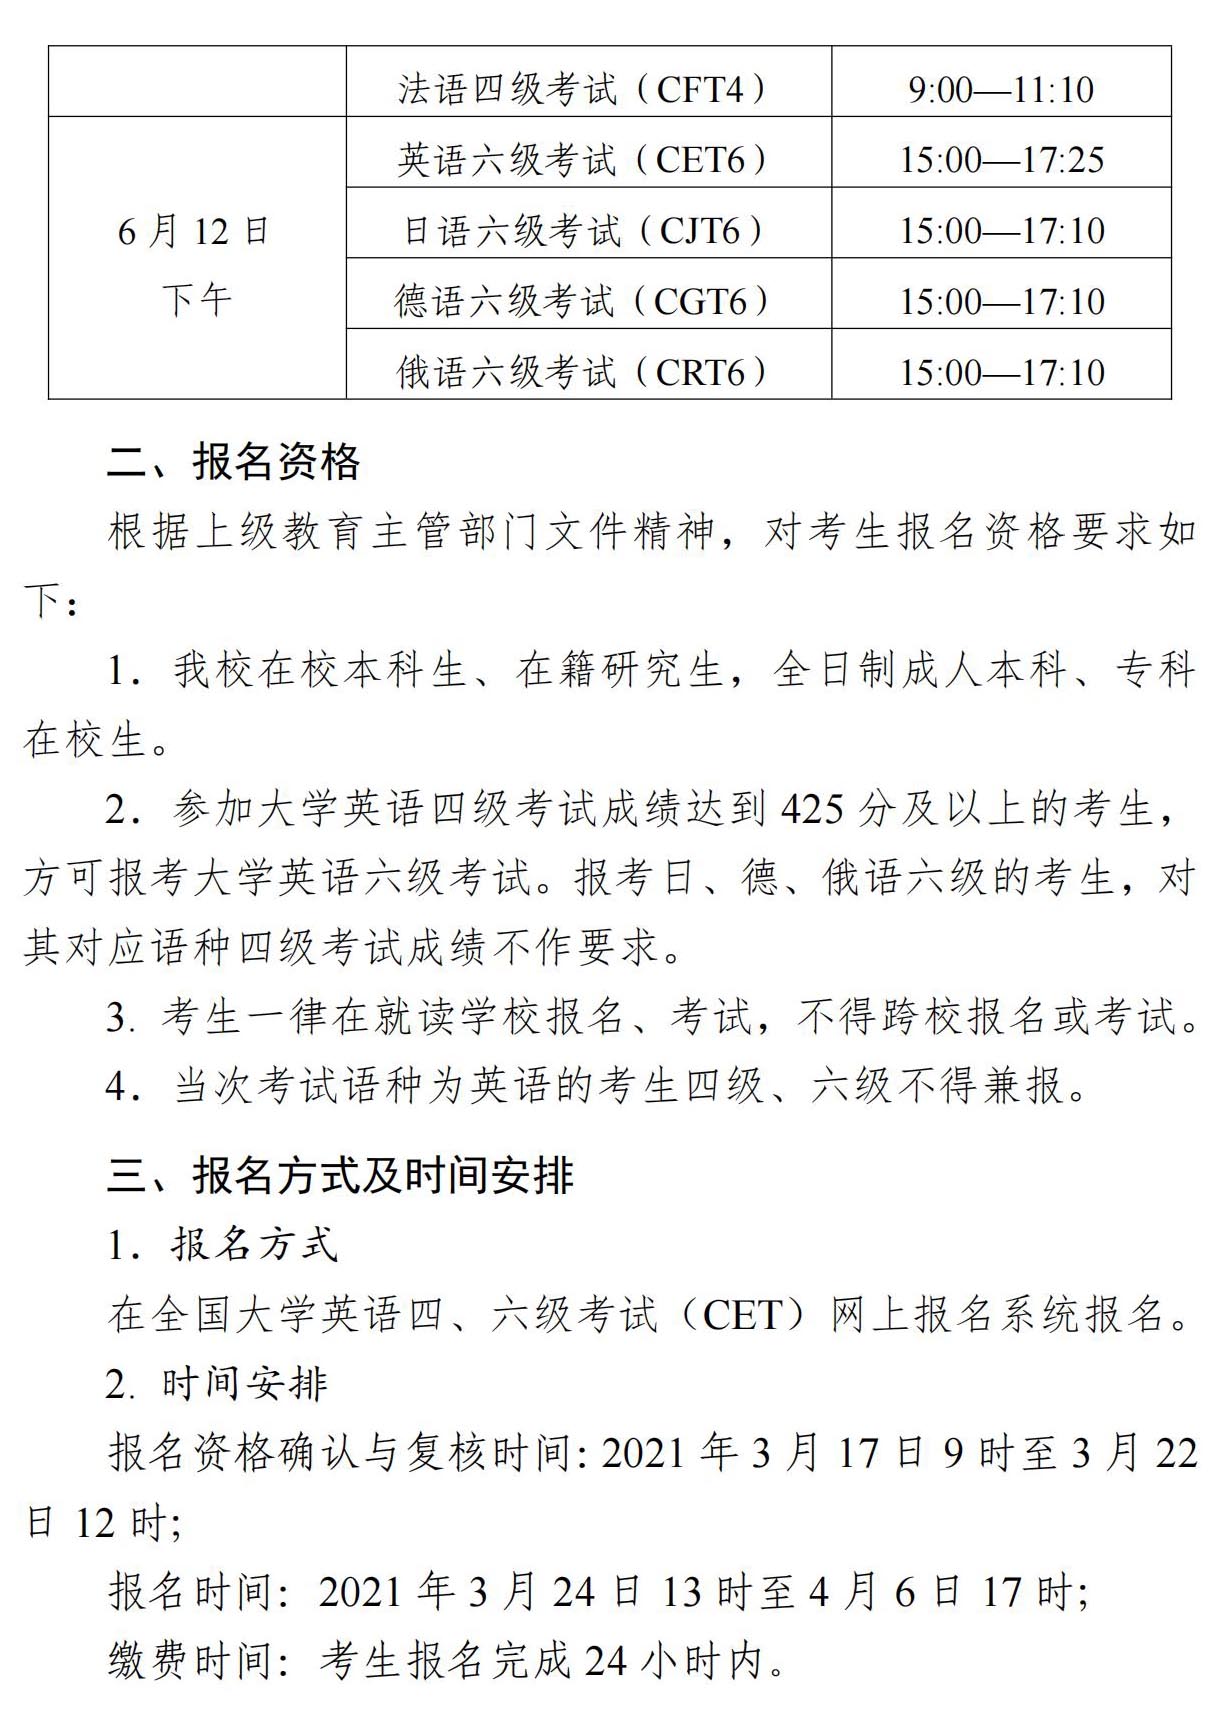 江苏科技大学2021年上半年英语四六级报名通知